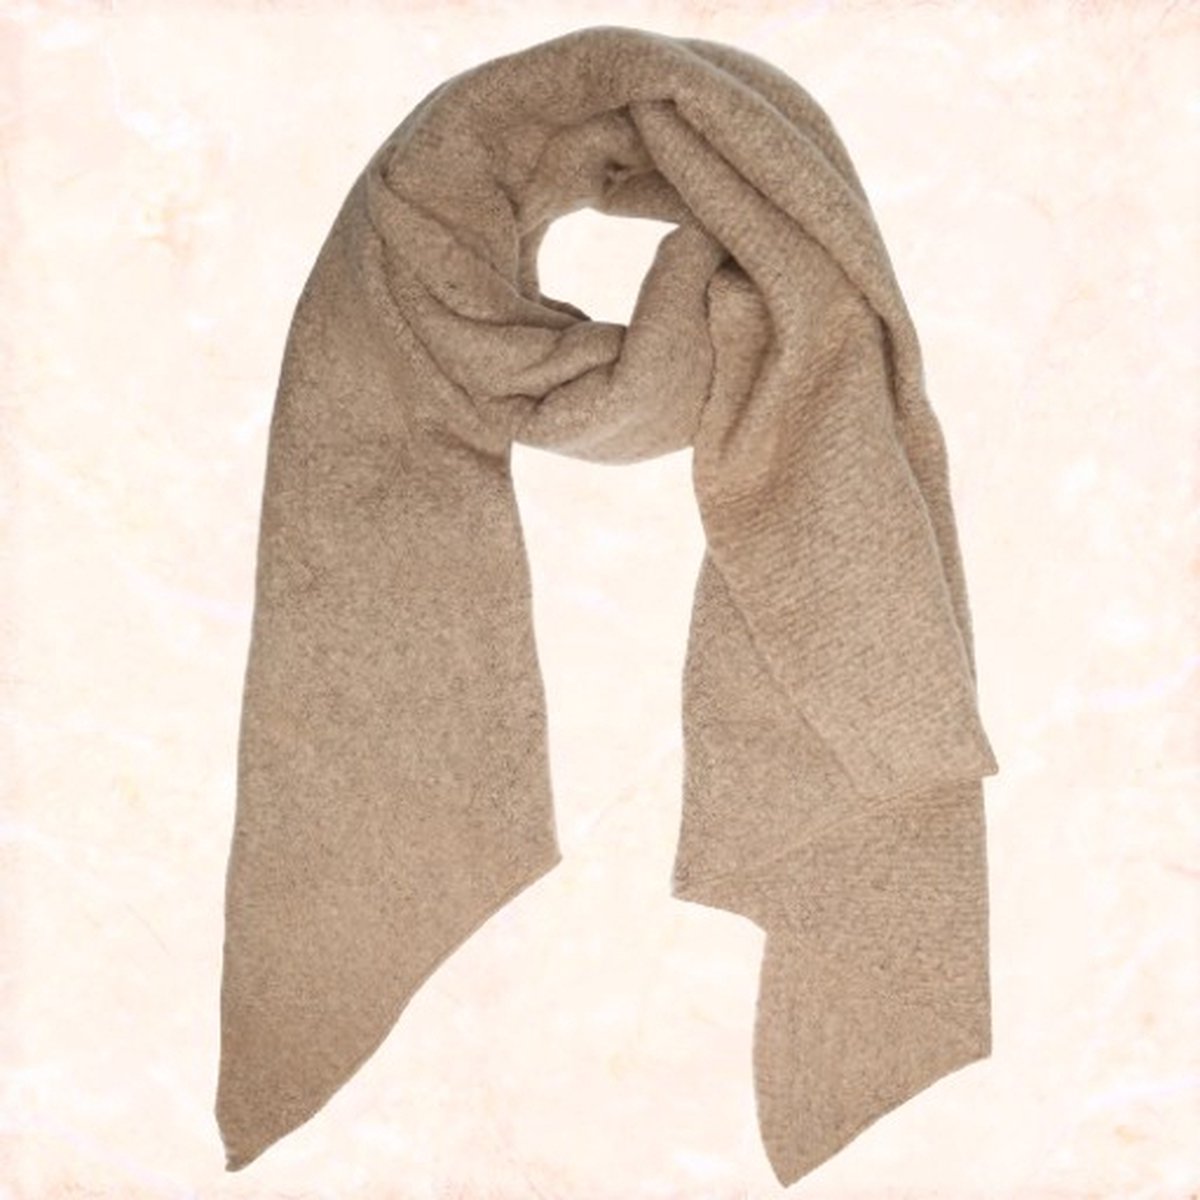 Jobo by Jet - Beige sjaal - Dames sjaal - Súper zacht - Jeukt niet - Grote winter sjaal - Enorm warm